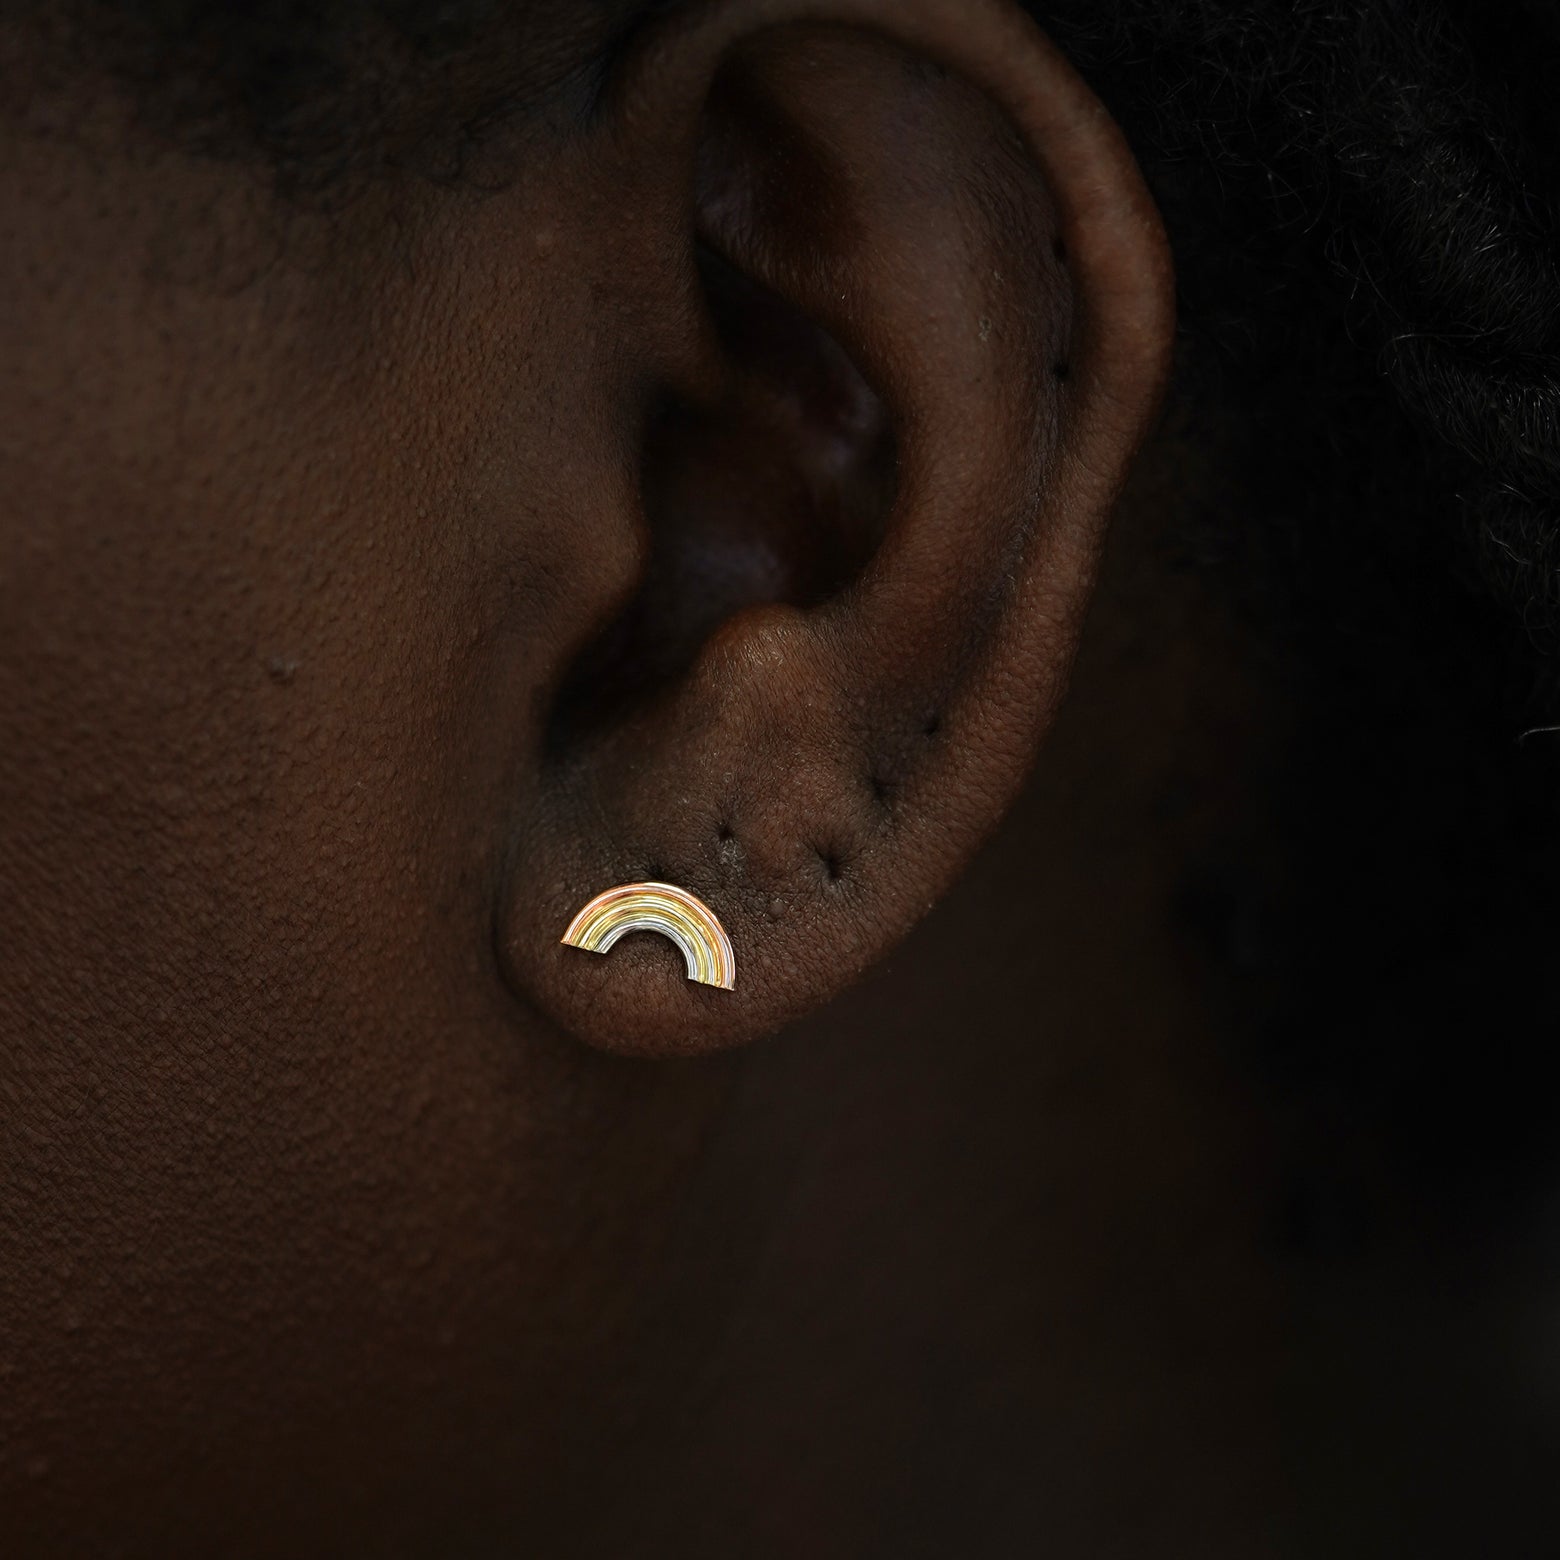 A model's ear wearing a tricolor 14k gold Rainbow Earring